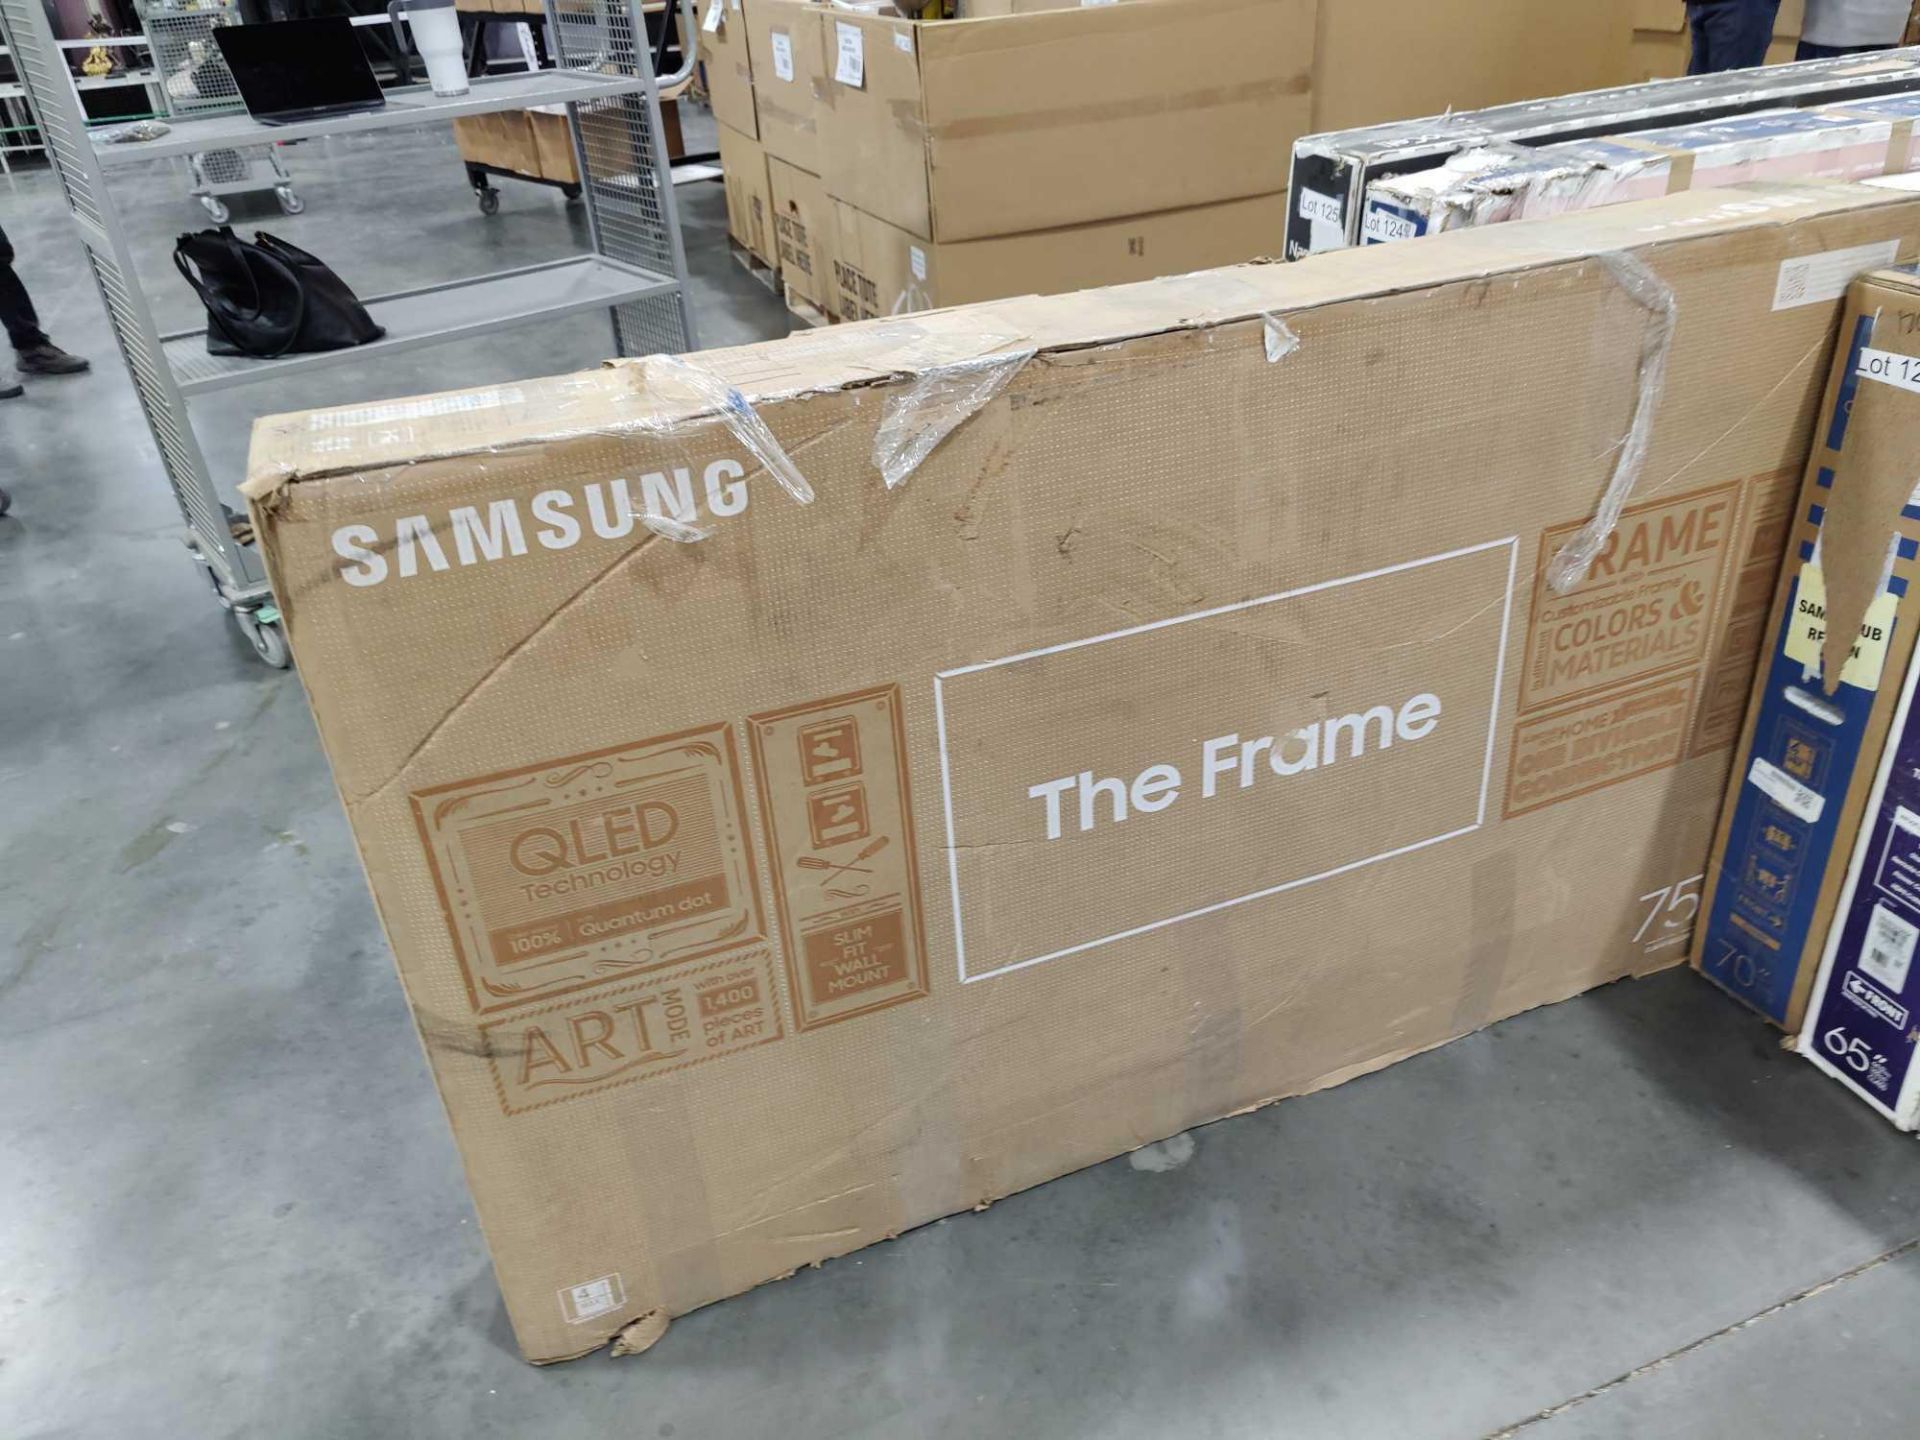 Samsung 75" Frame TV - Image 3 of 3